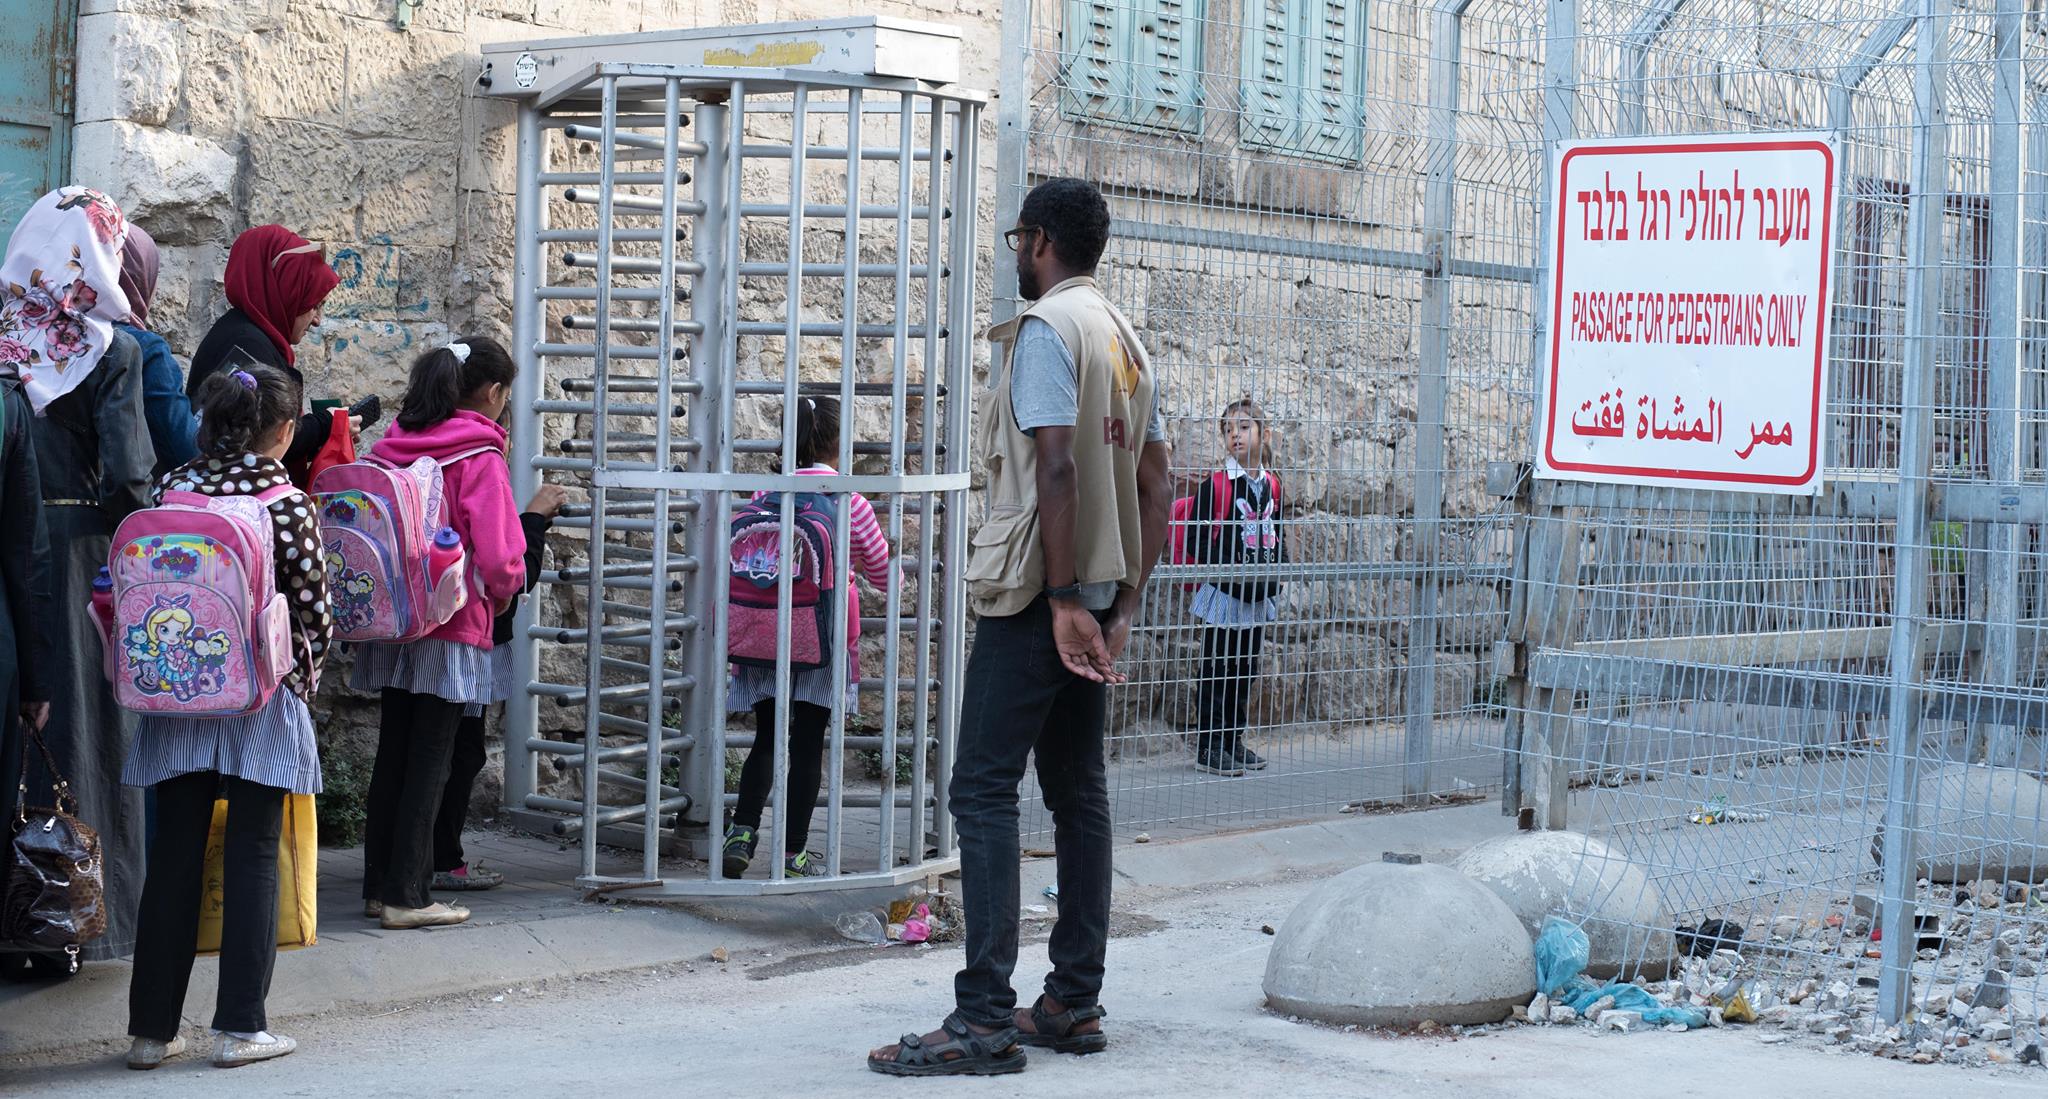 Foto: Mads Gram. Skolebørn på vej gennem checkpoint i Hebron. ISM aktivist er til stede for at sikre, børnene kommer sikkert frem.